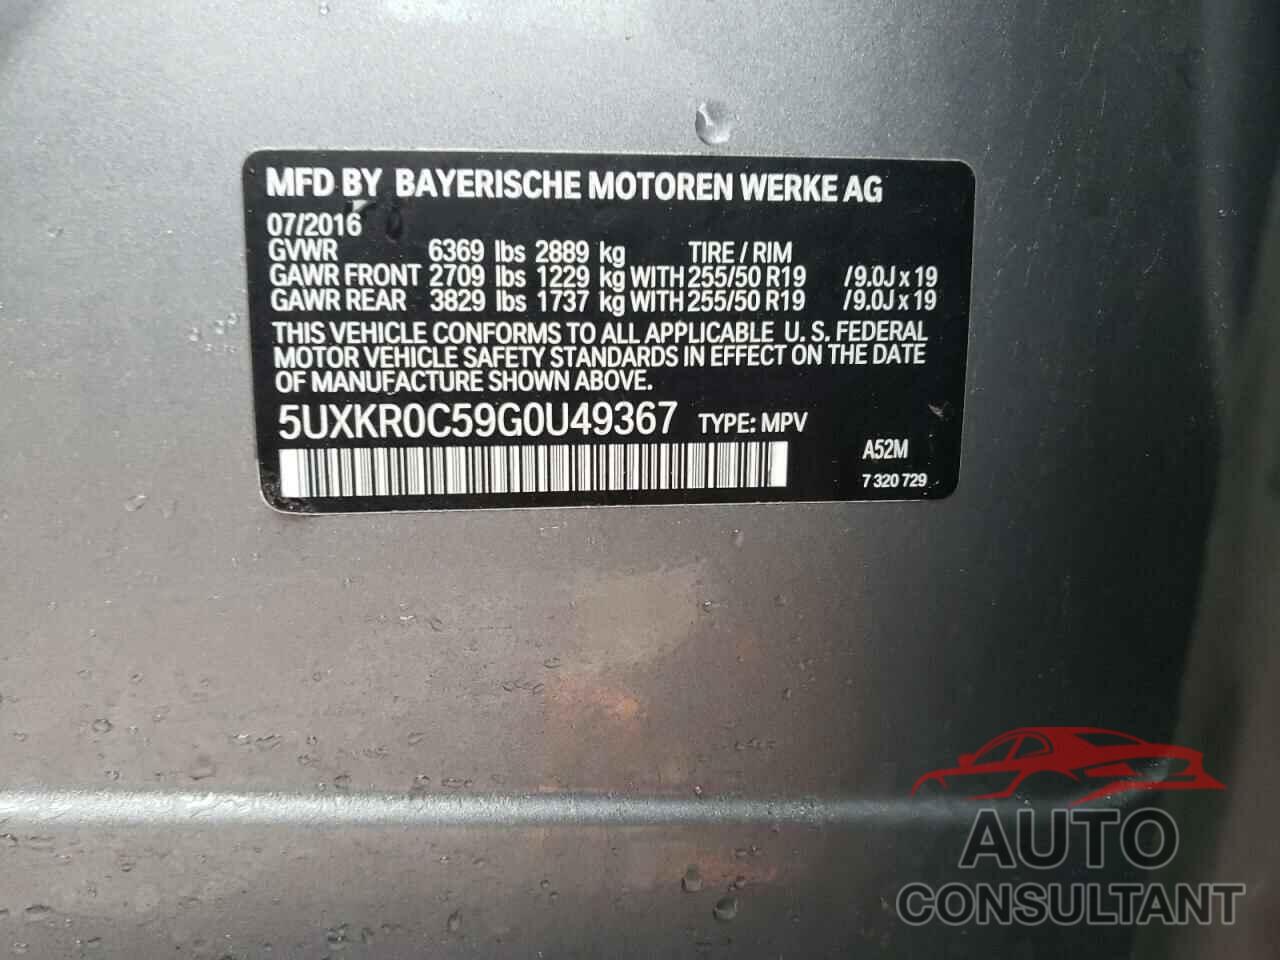 BMW X5 2016 - 5UXKR0C59G0U49367